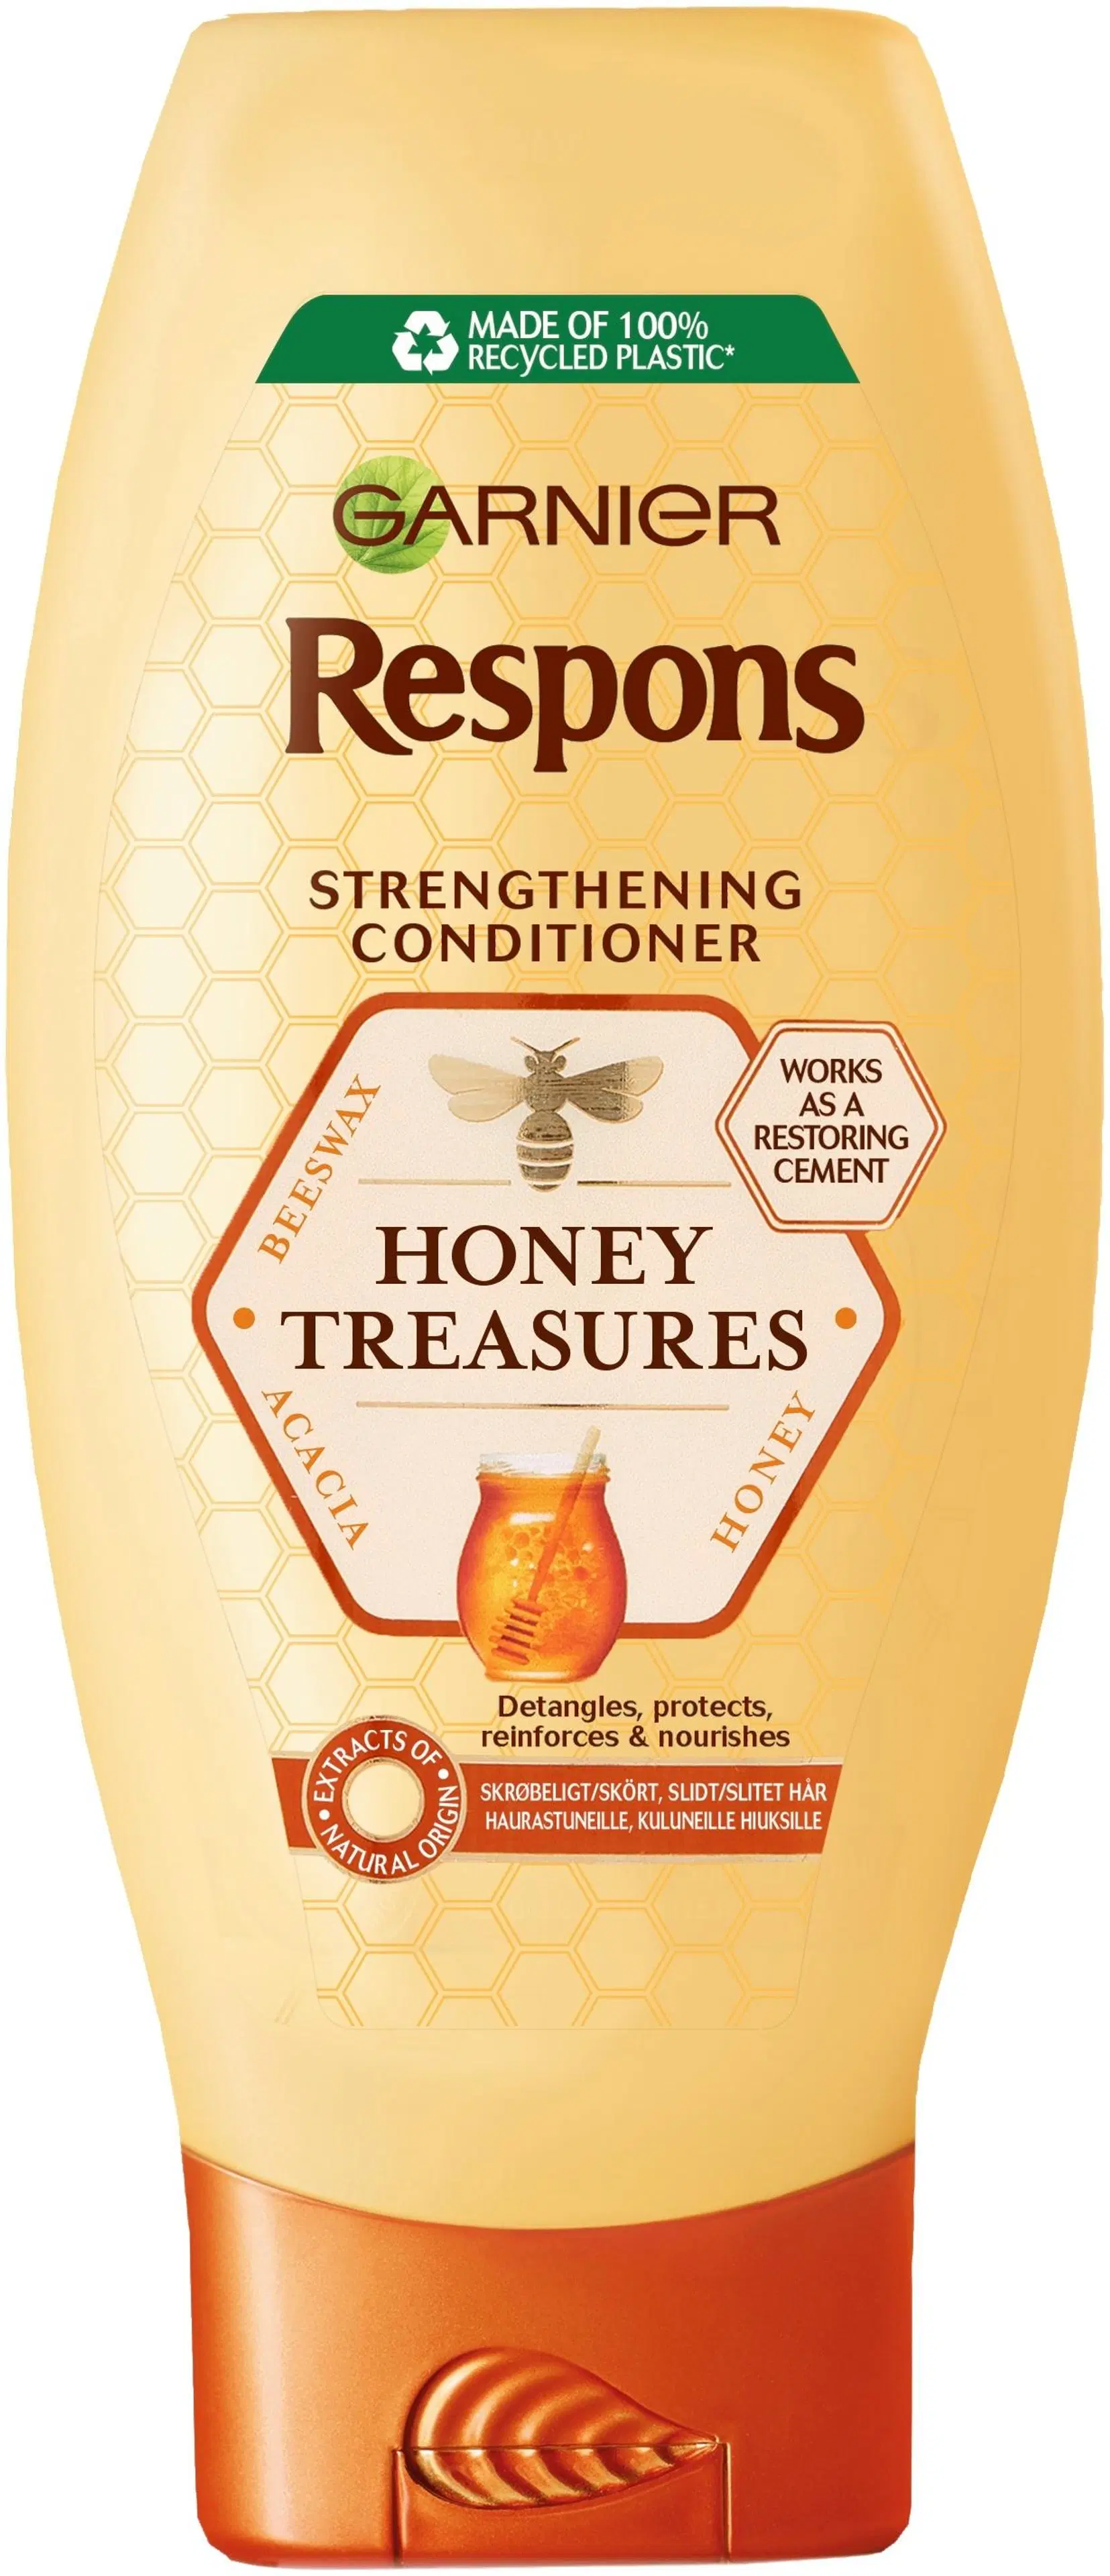 Garnier Respons Honey Treasures vahvistava hoitoaine heikoille ja kuluneille hiuksille 400ml